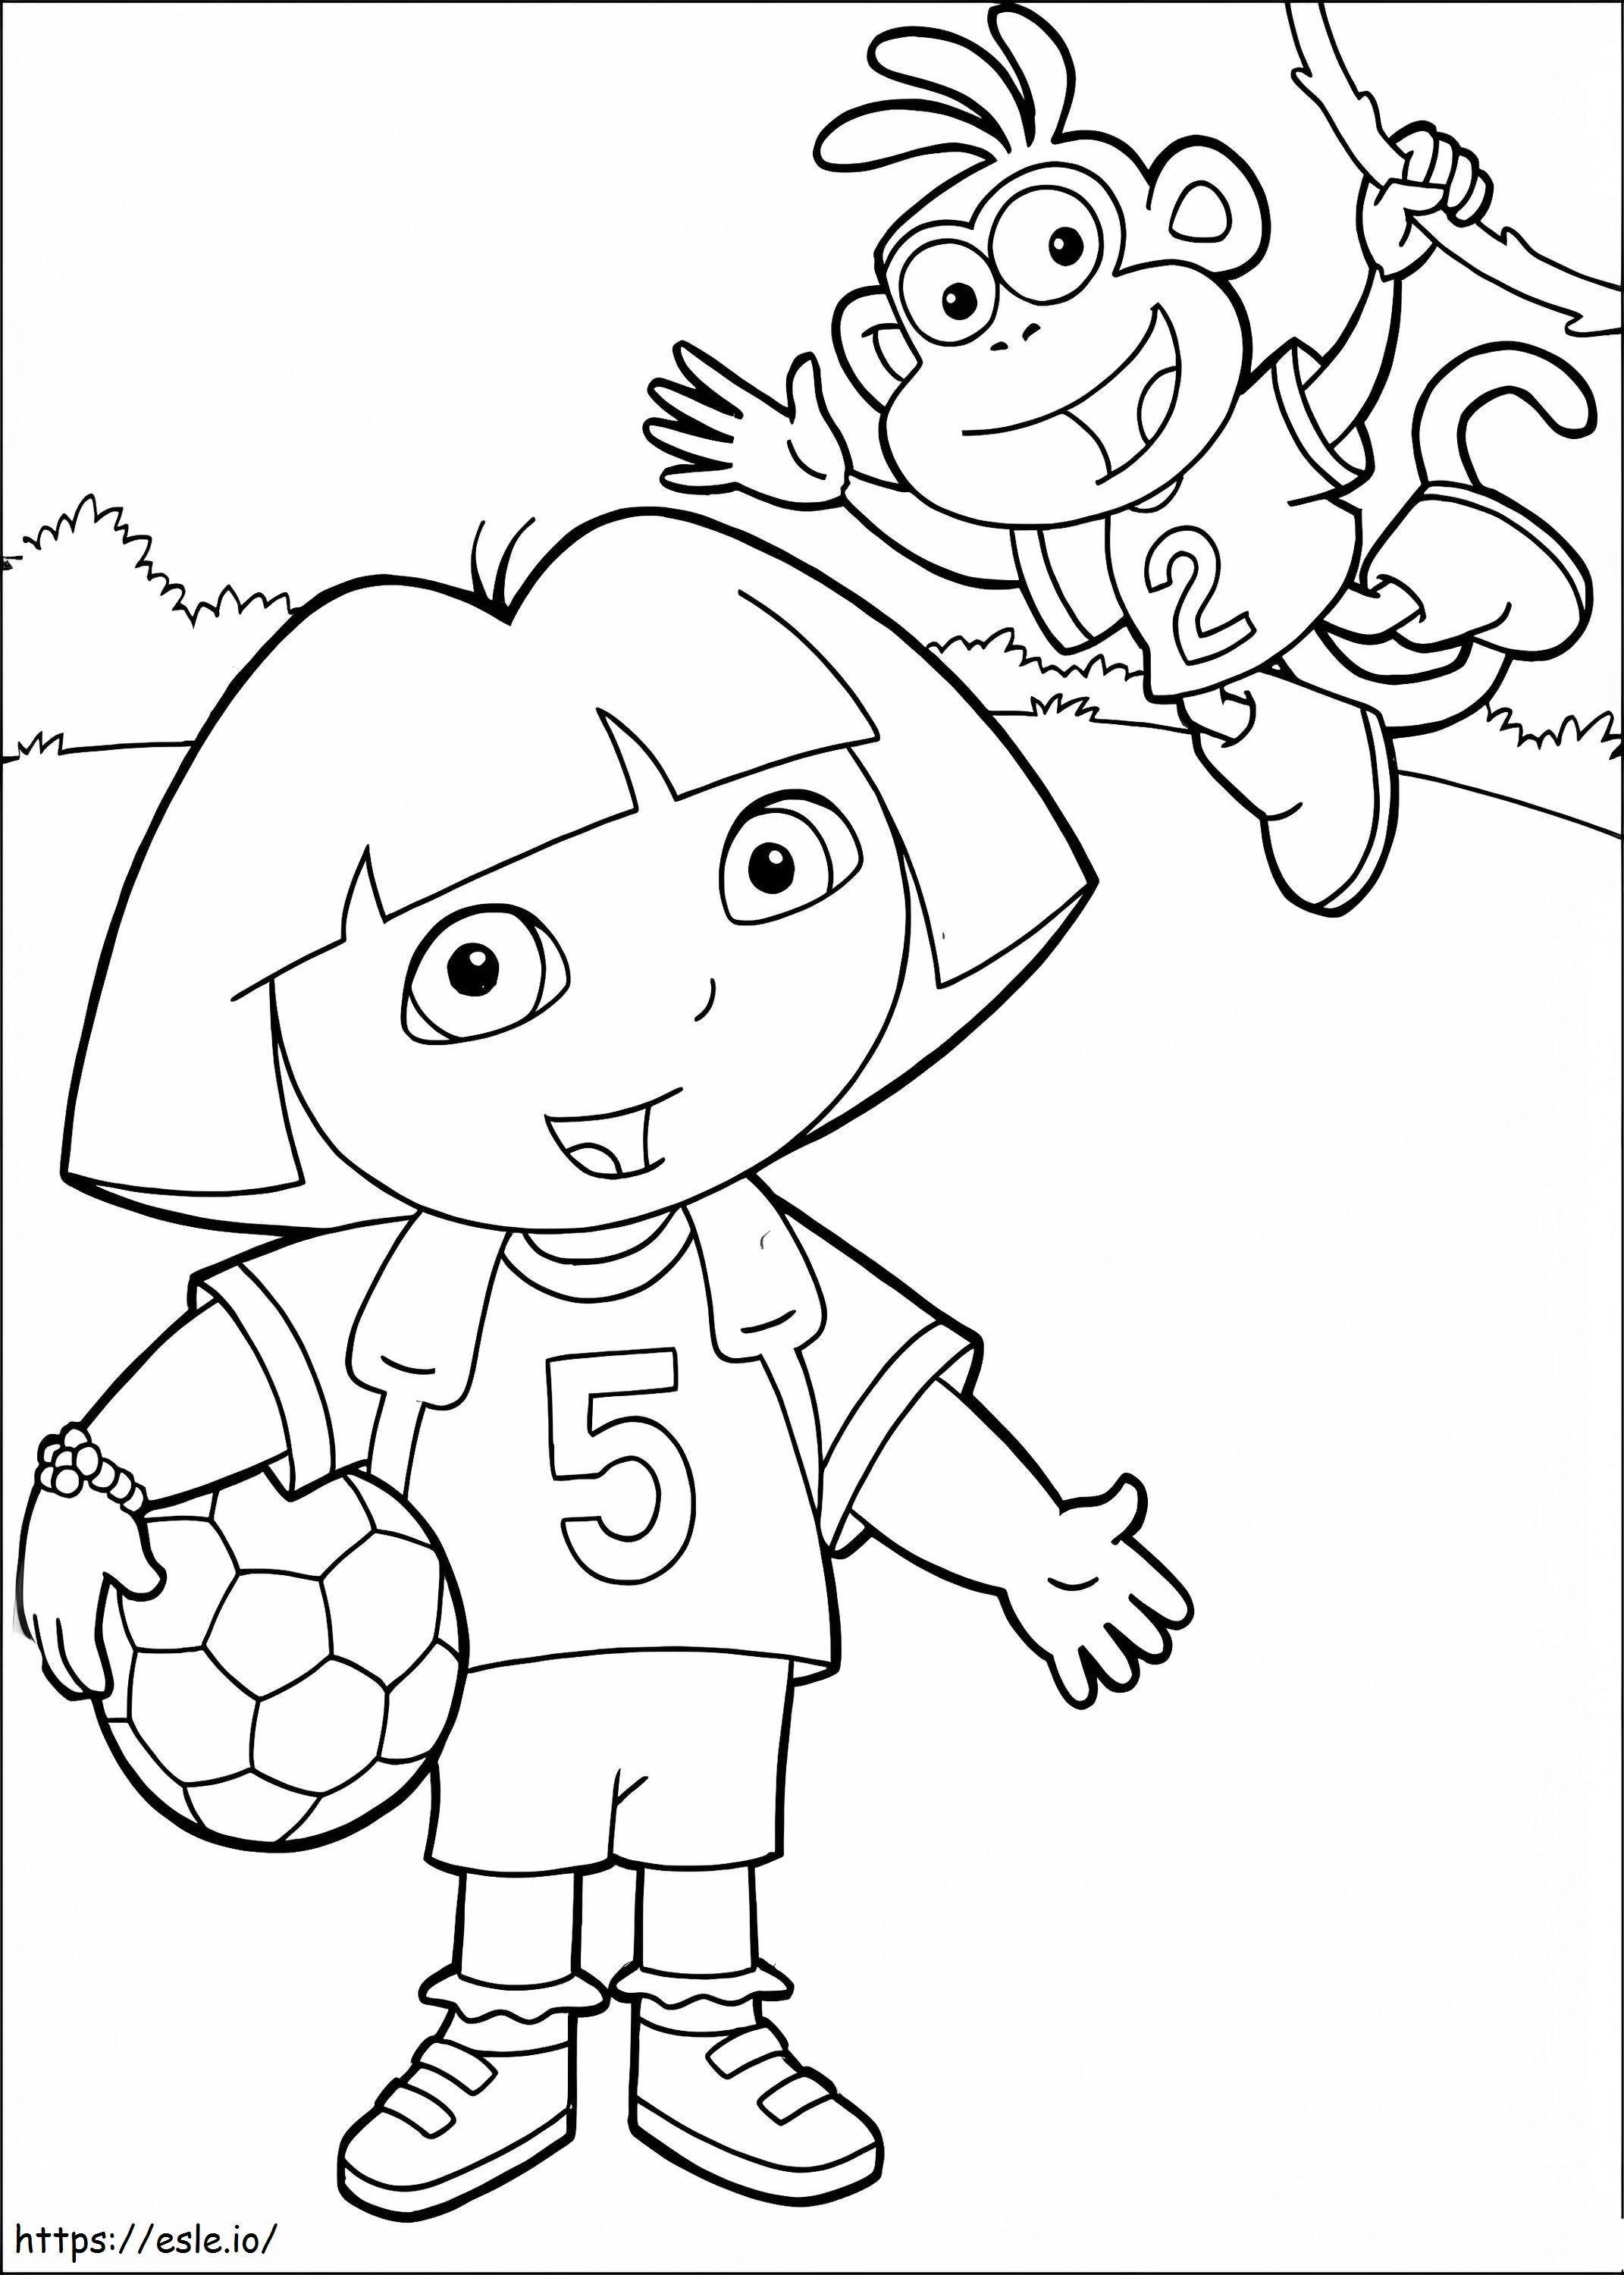 Botas y Dora jugando al fútbol. para colorear